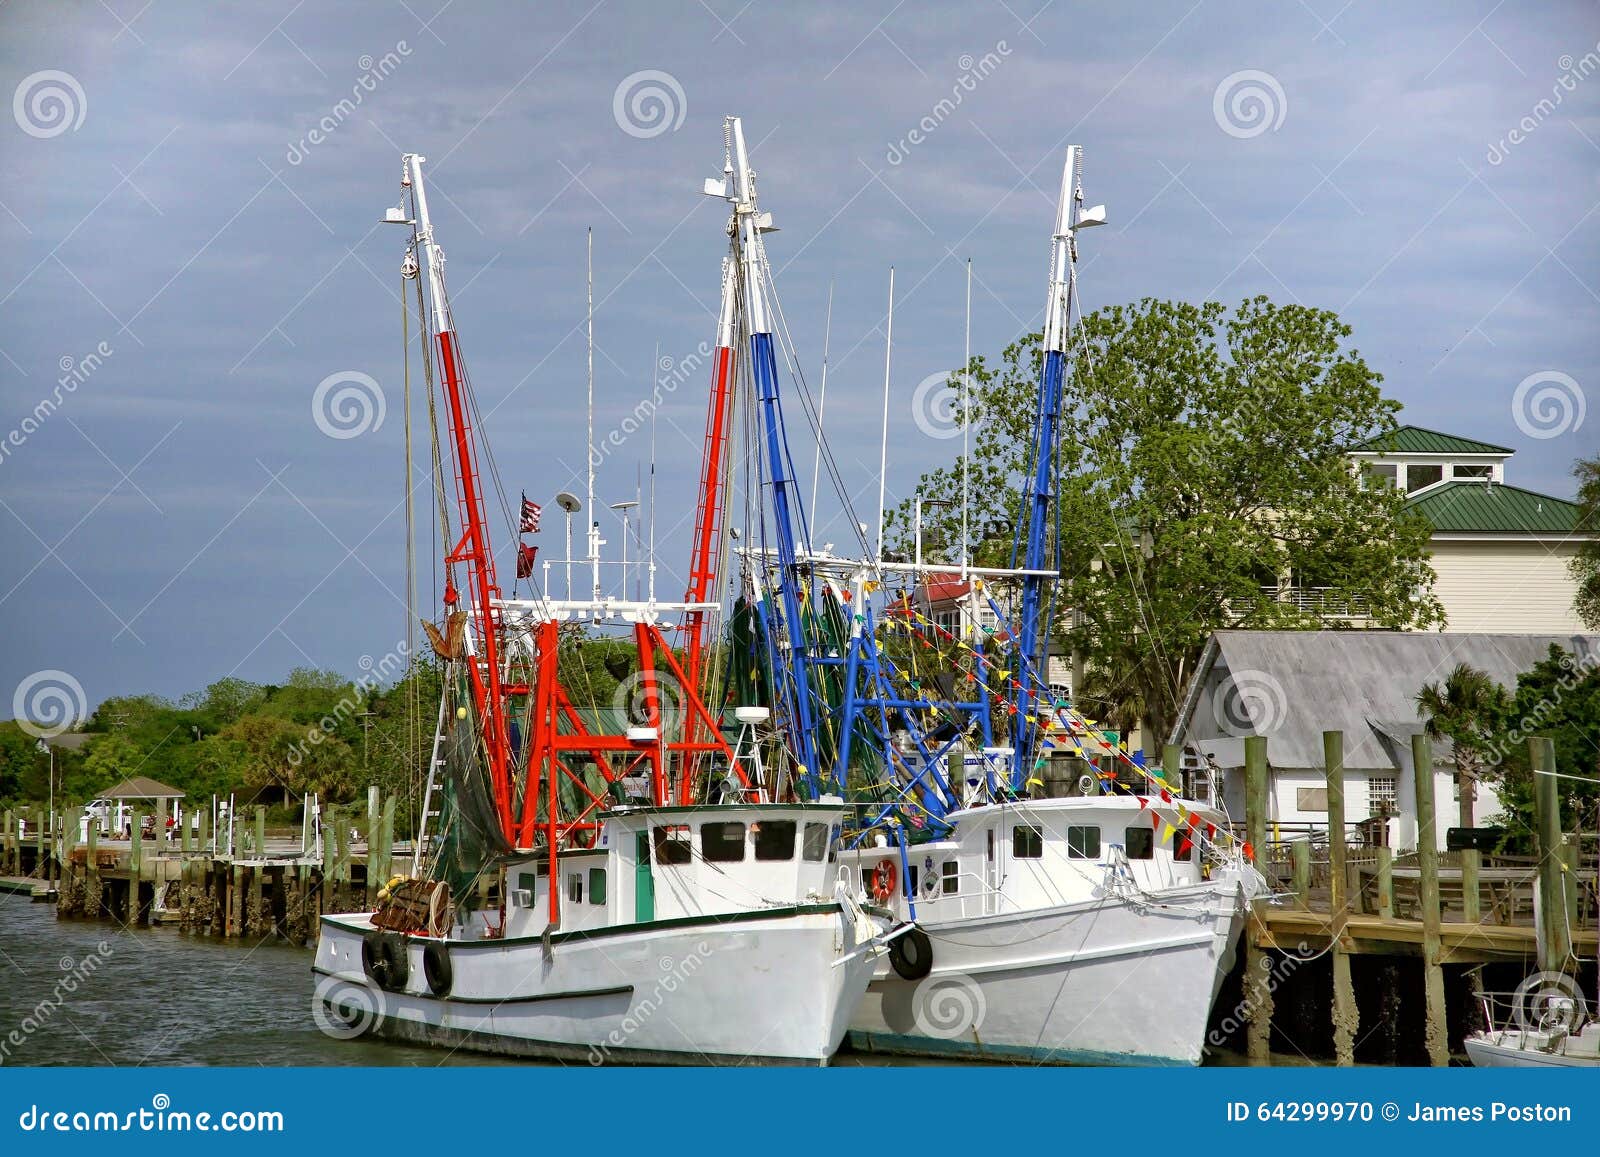 docked shrimp boats